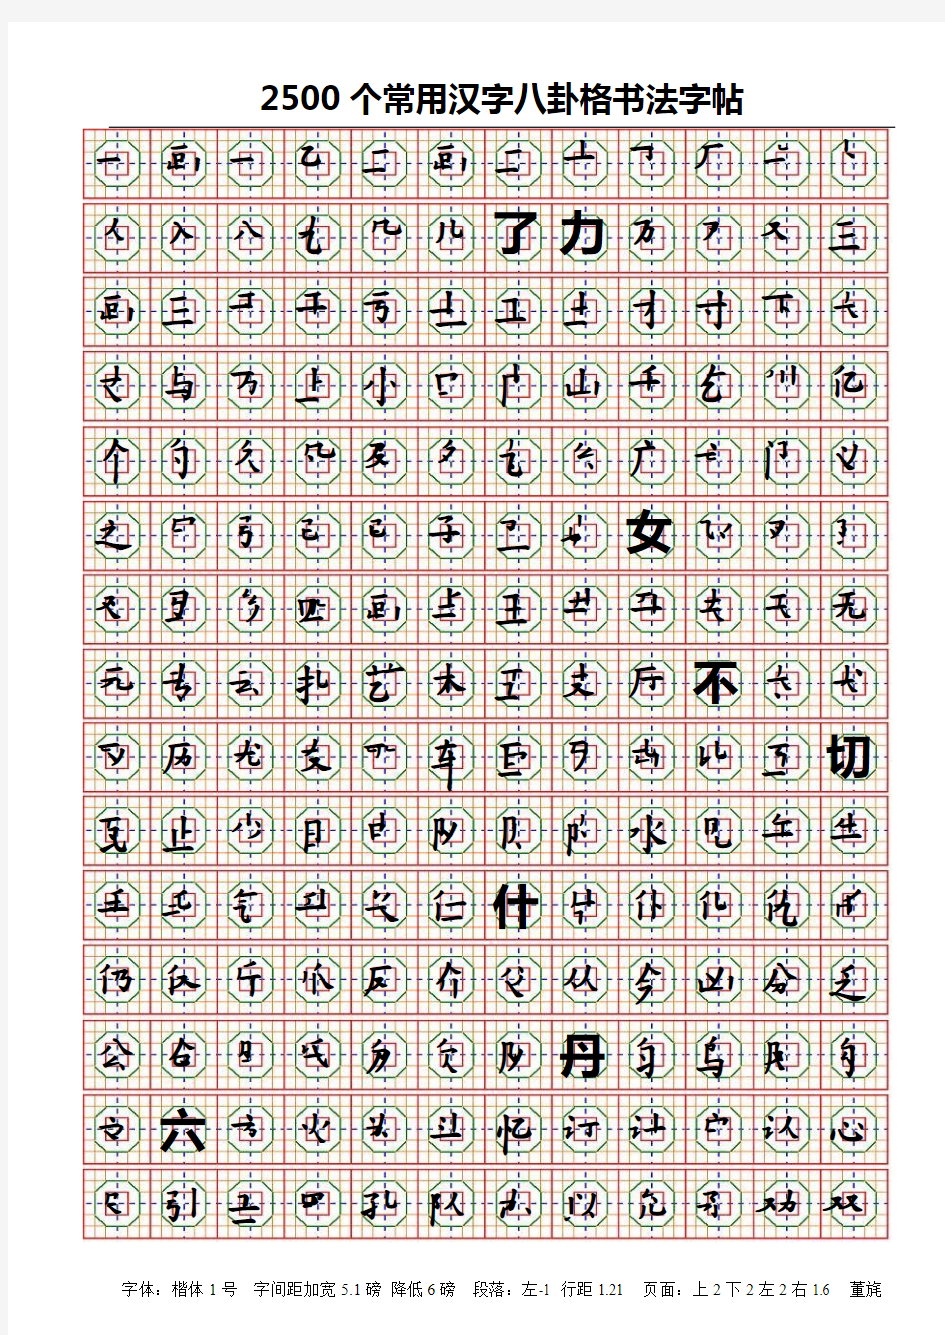 2500汉字书写字帖(八卦格)解析